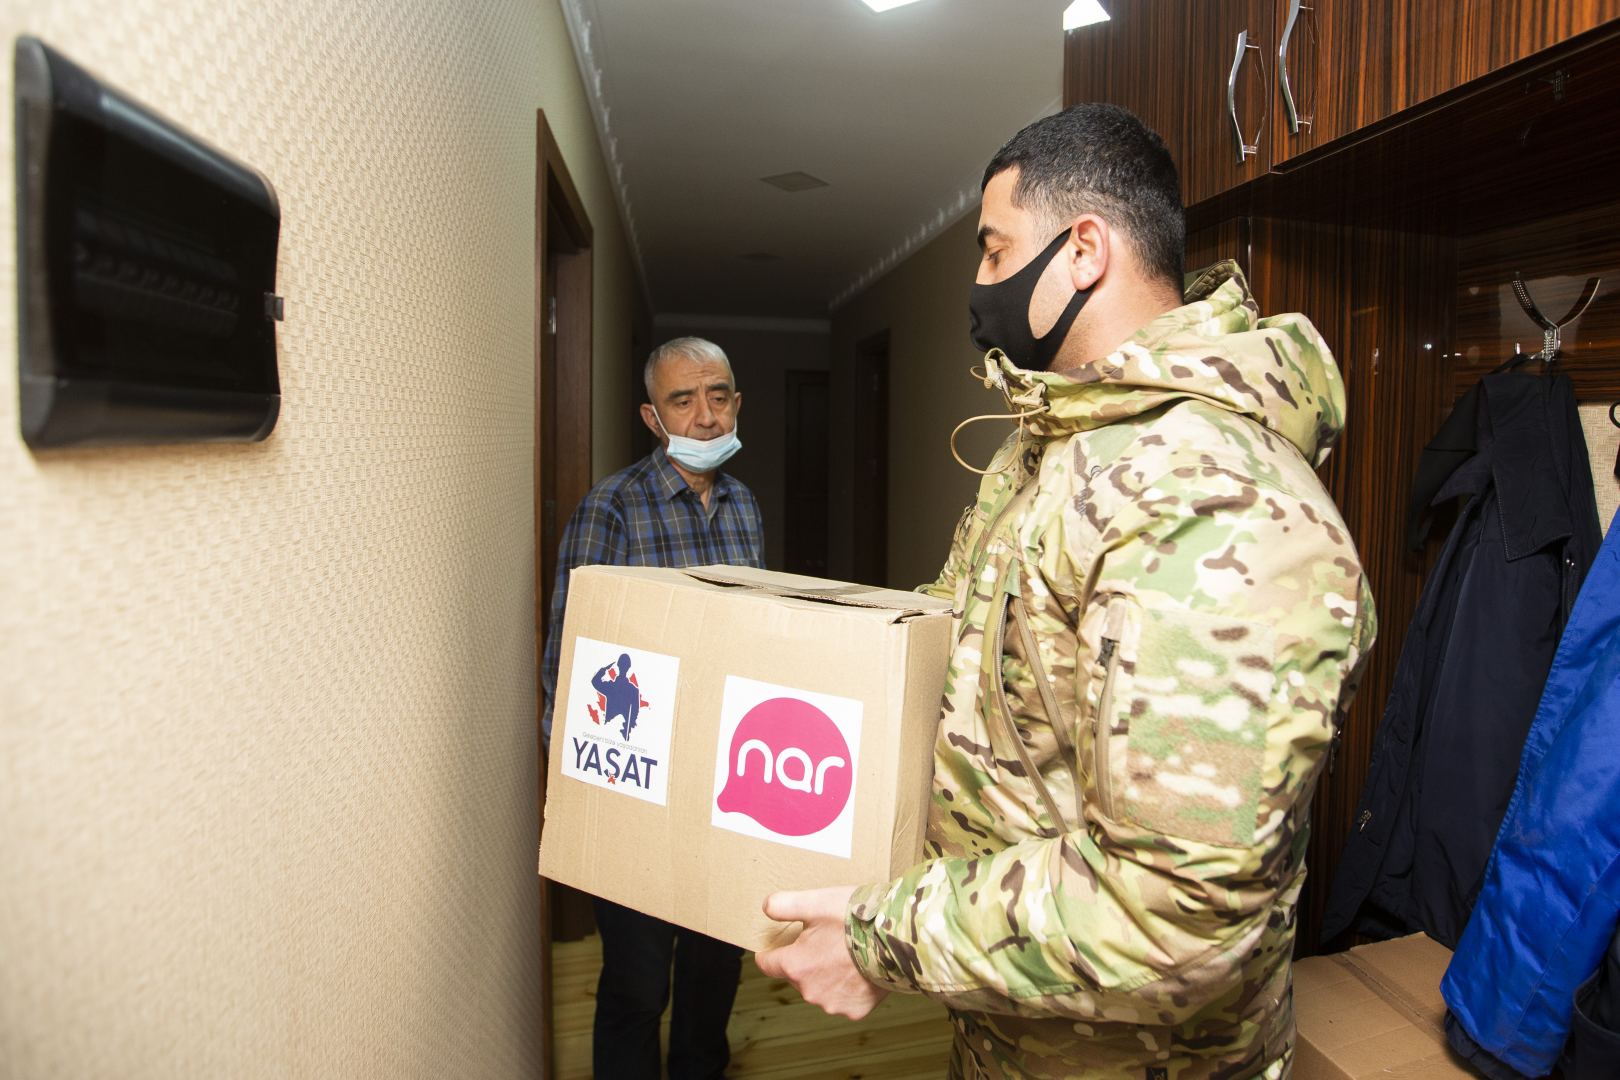 Nar совместно с Фондом «ЯШАТ» представляет новрузские подарки семьям шехидов и ветеранам войны